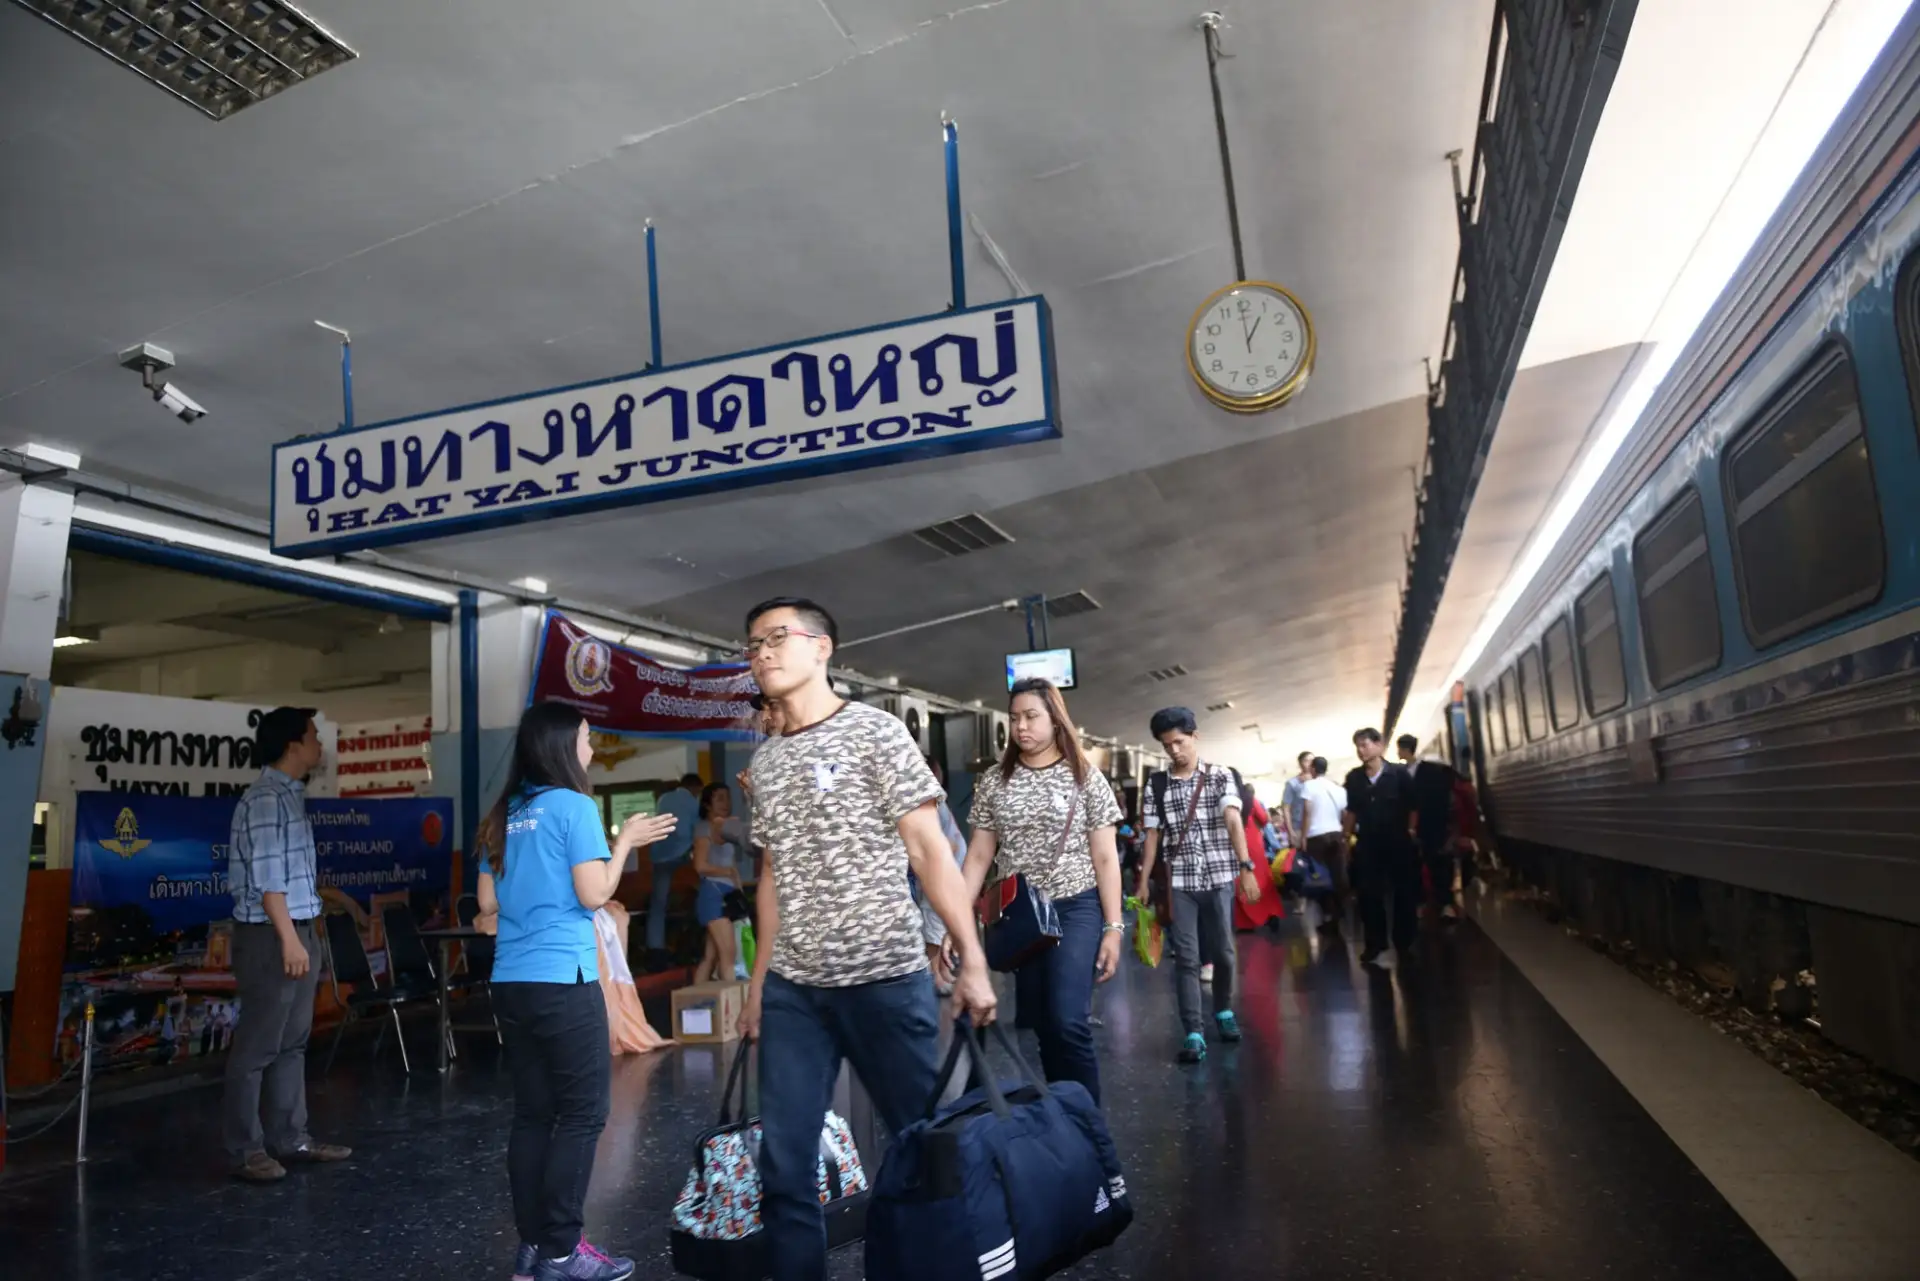 รถไฟคึกคักประชาชนทยอยเดินทางช่วงสงกรานต์ ตั้งจุดตรวจเพิ่มความปลอดภัย